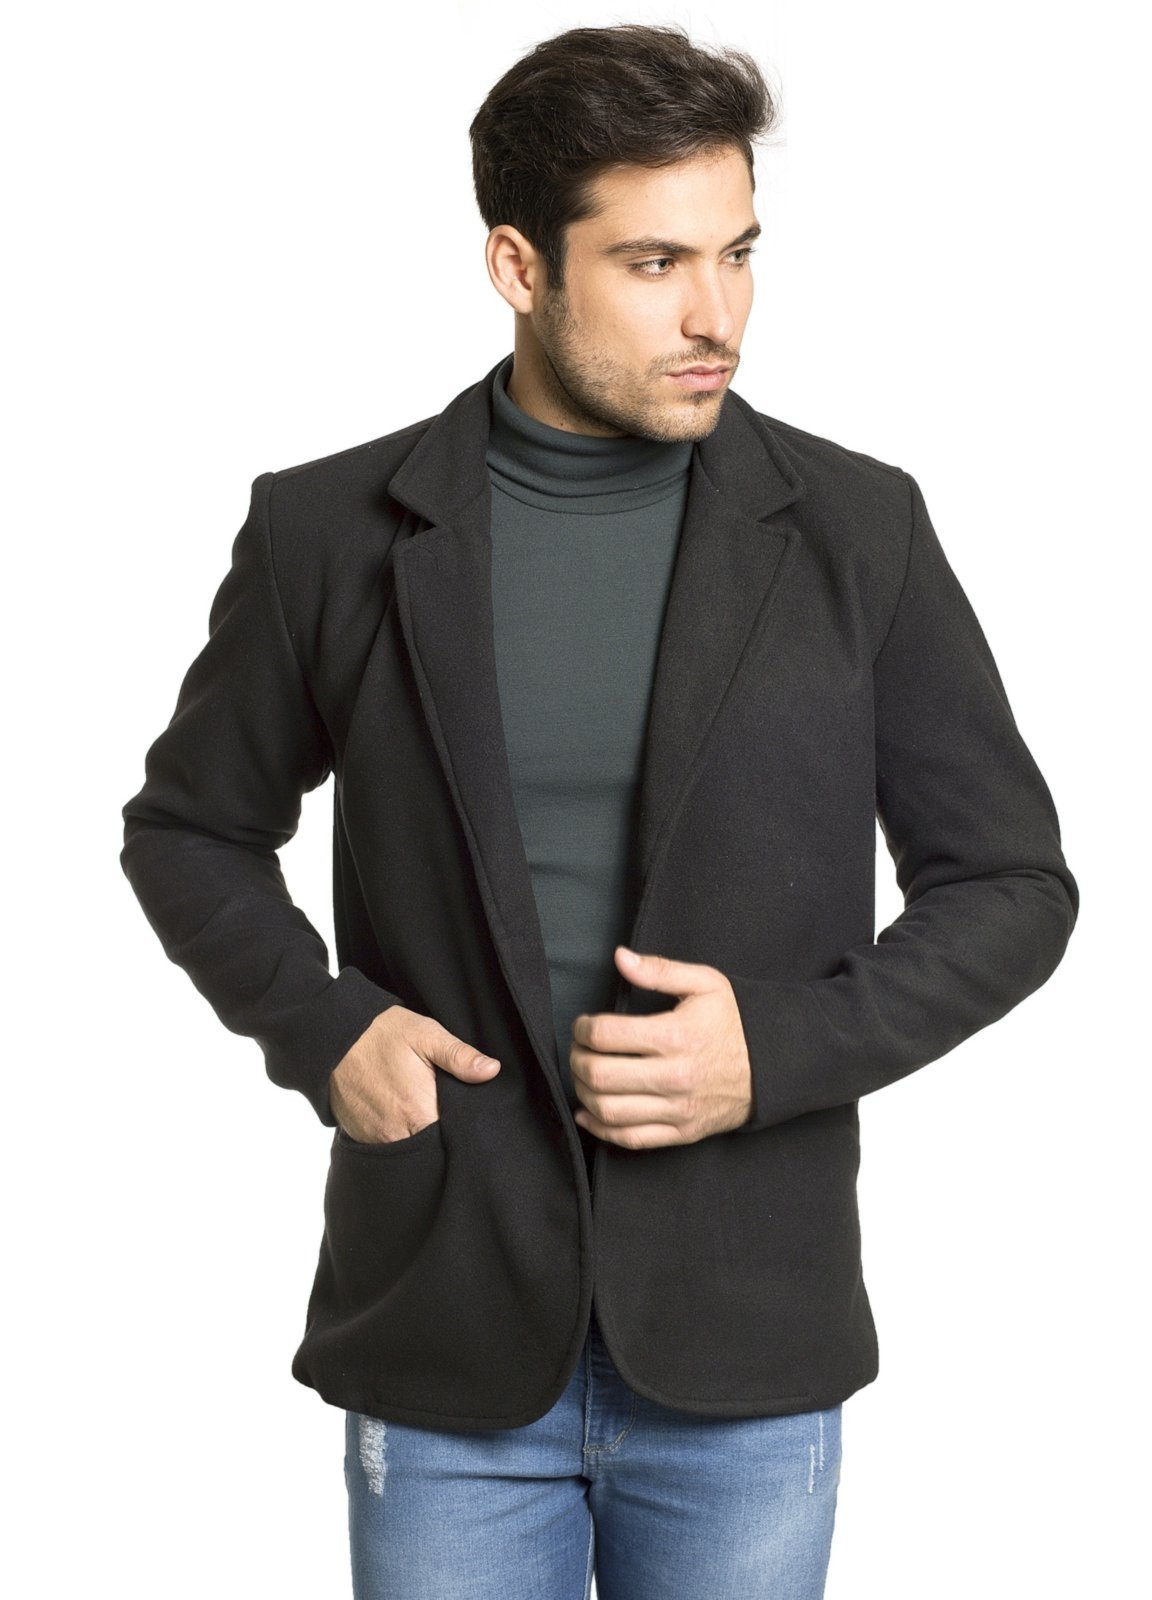 casaco masculino de lã batida